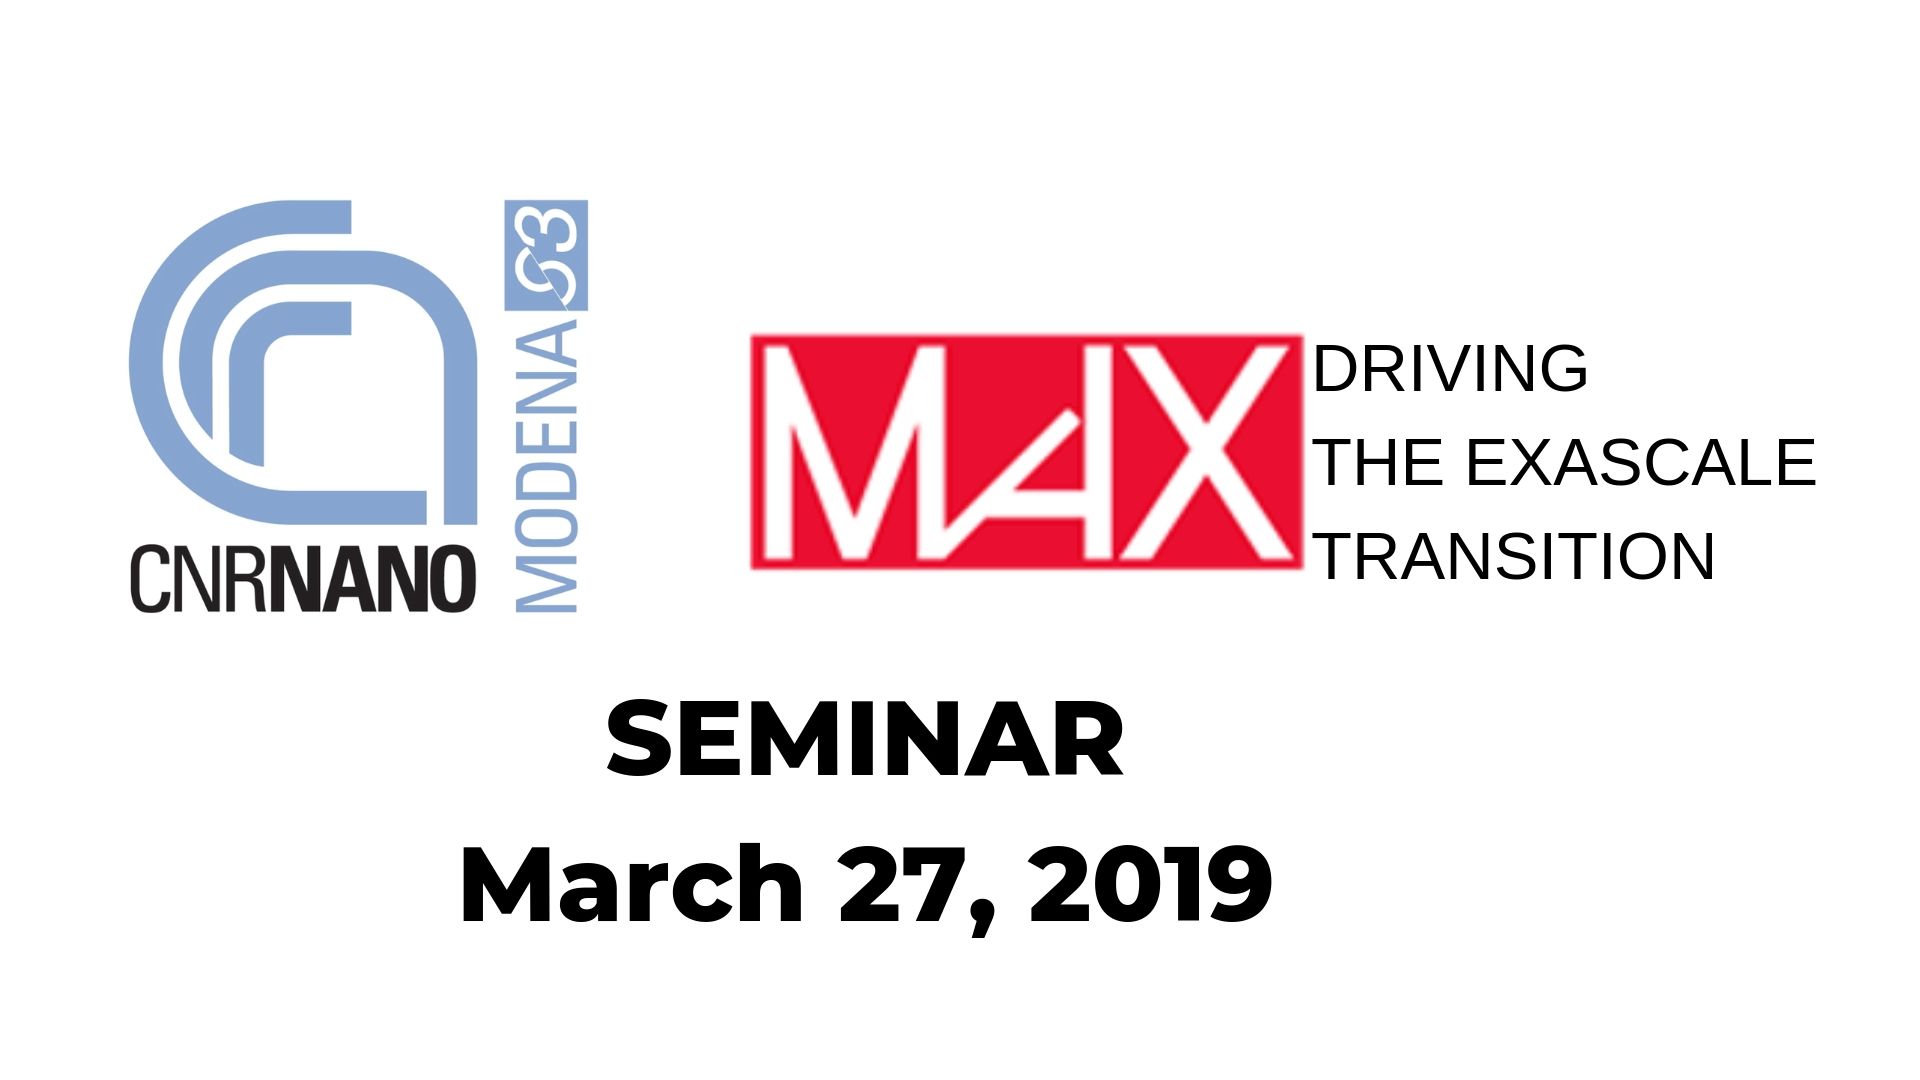 CNR Nano- MaX SEMINAR March 27, 2019